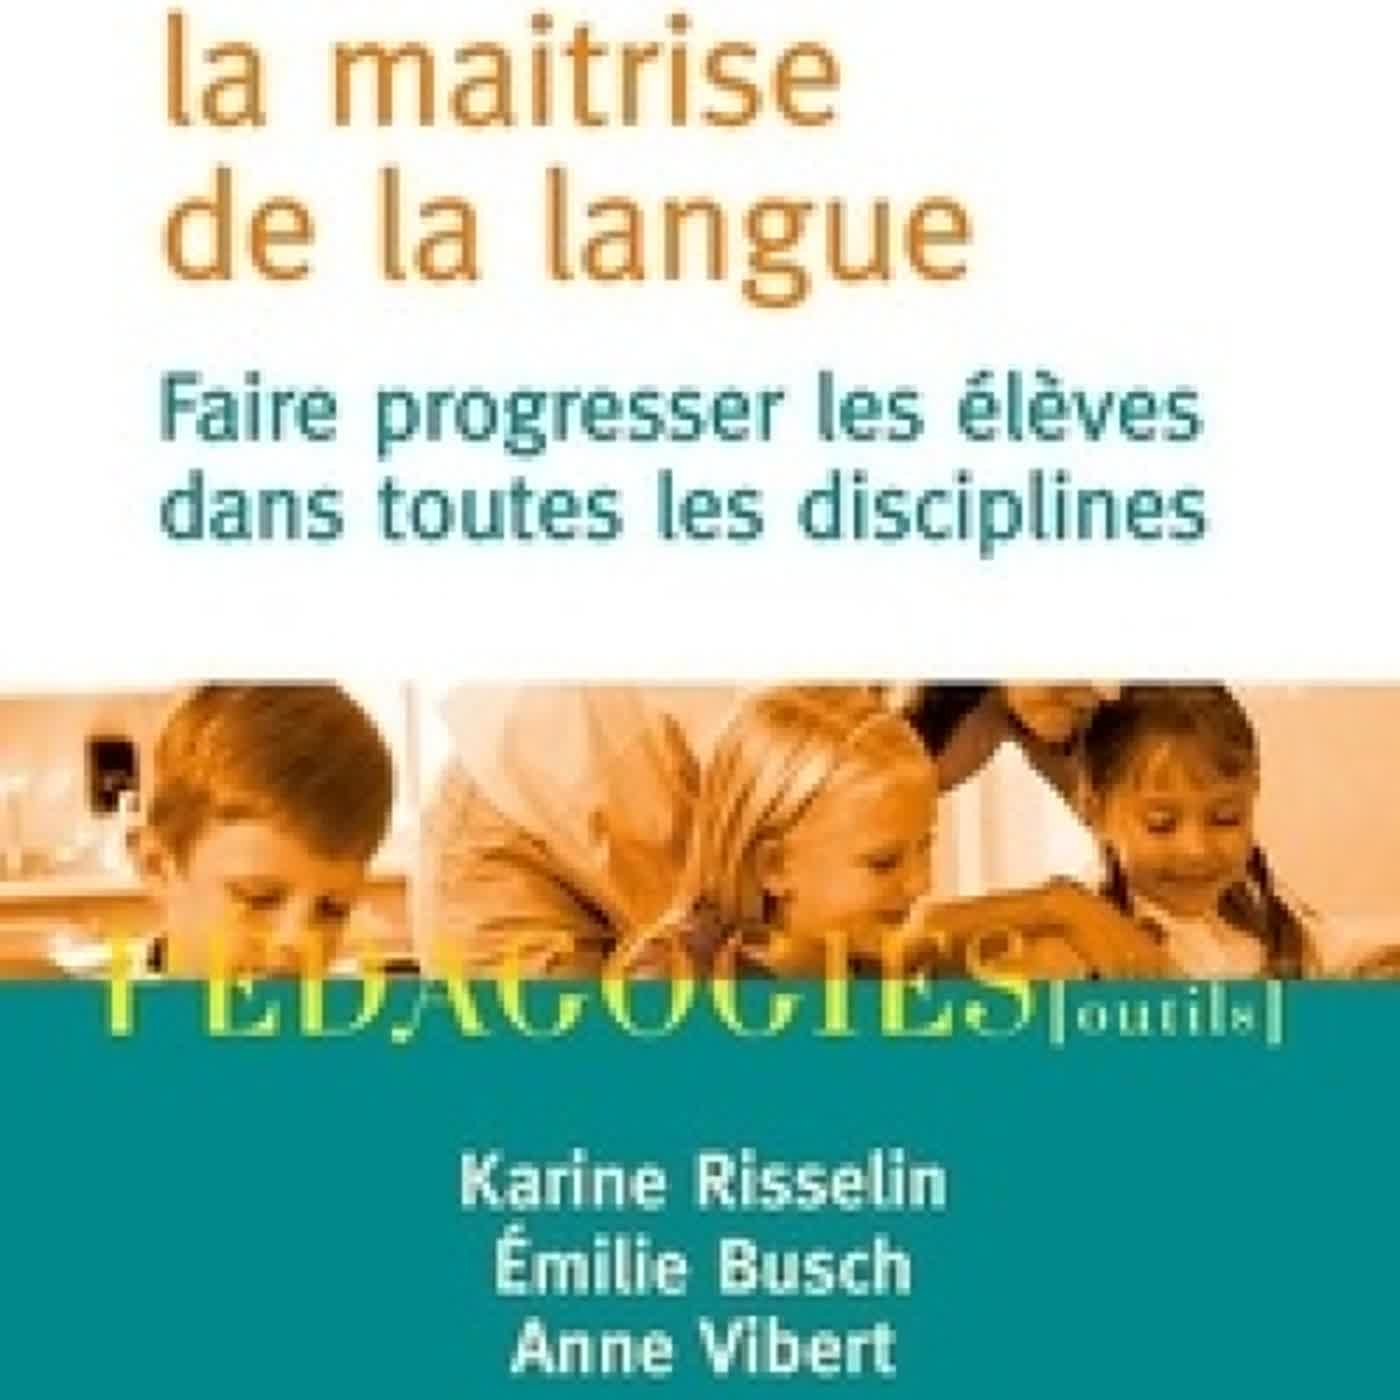 [PDF] Travailler la maitrise de la langue  - Faire progresser les élèves dans toutes les disciplines by Emilie Busch, Karine Risselin, Anne Vibert